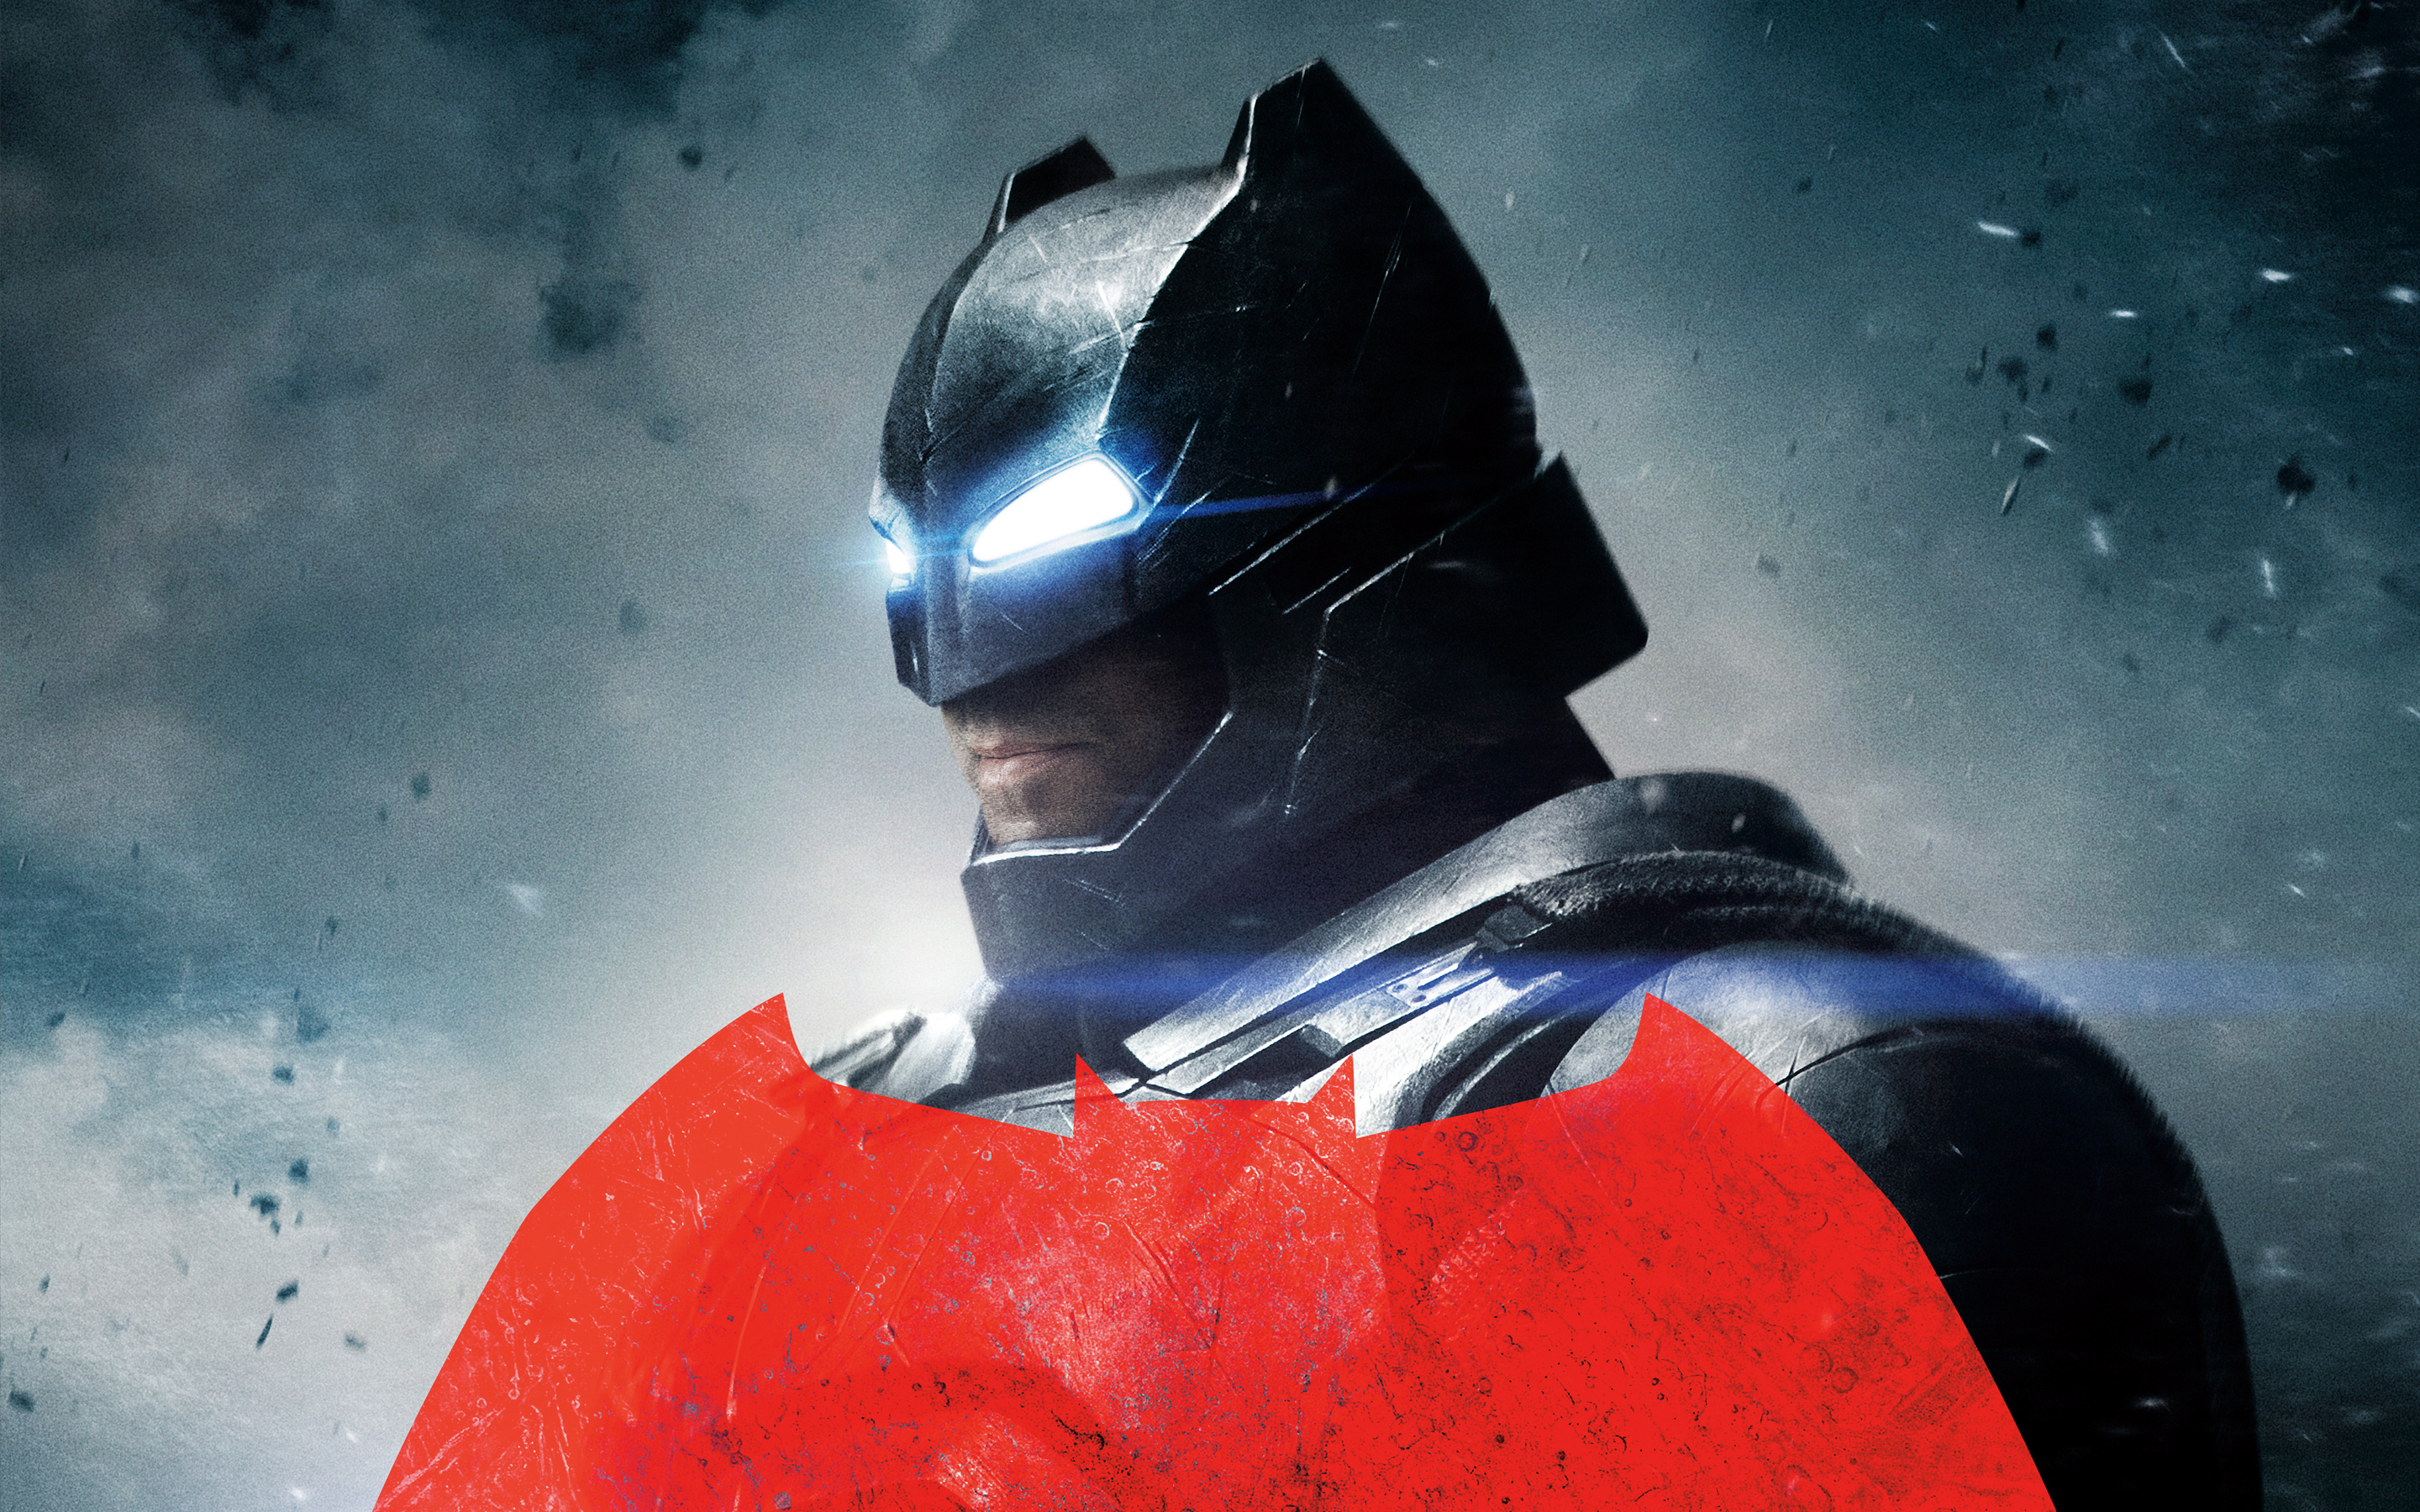 fond d'écran batman v superman,super héros,homme chauve souris,personnage fictif,ligue de justice,casque